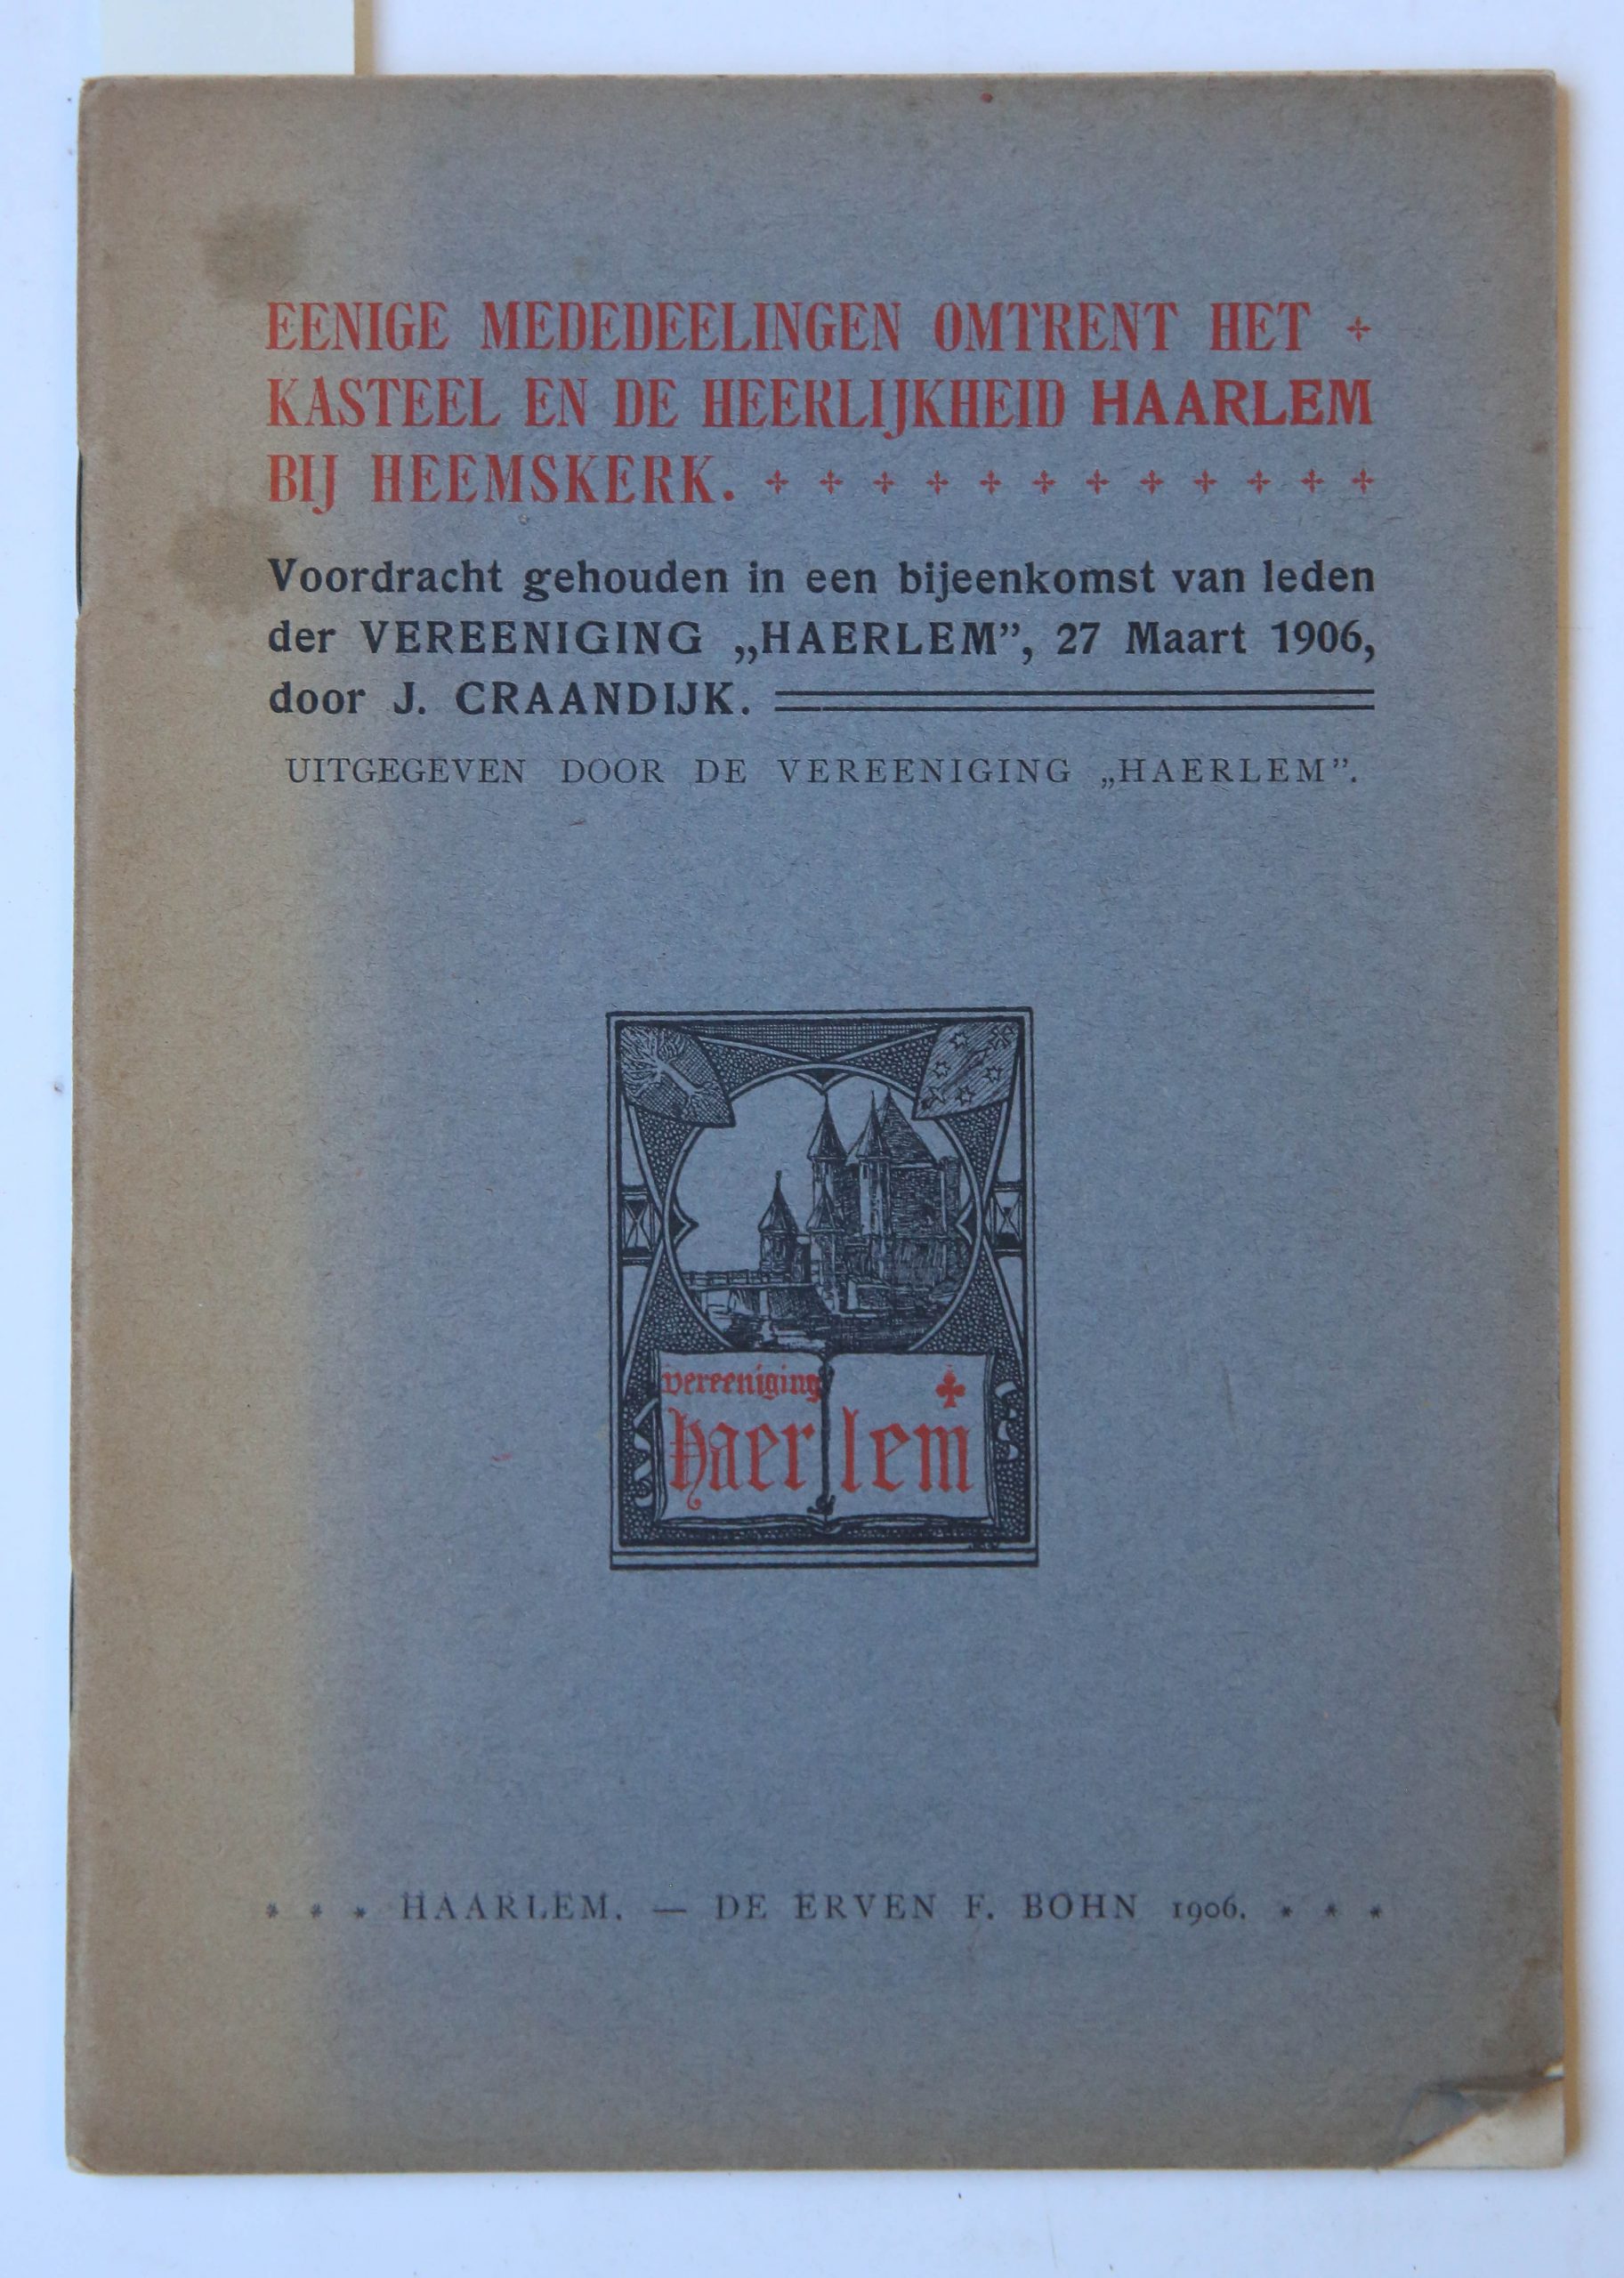 Eenige mededeelingen omtrent het kasteel en de heerlijkheid Haarlem bij Heemskerk : voordracht gehouden in een bijeenkomst van leden der Vereeniging "Haerlem", 27 Maart 1906, Haarlem : Erven F. Bohn, 1906, 32 pp.